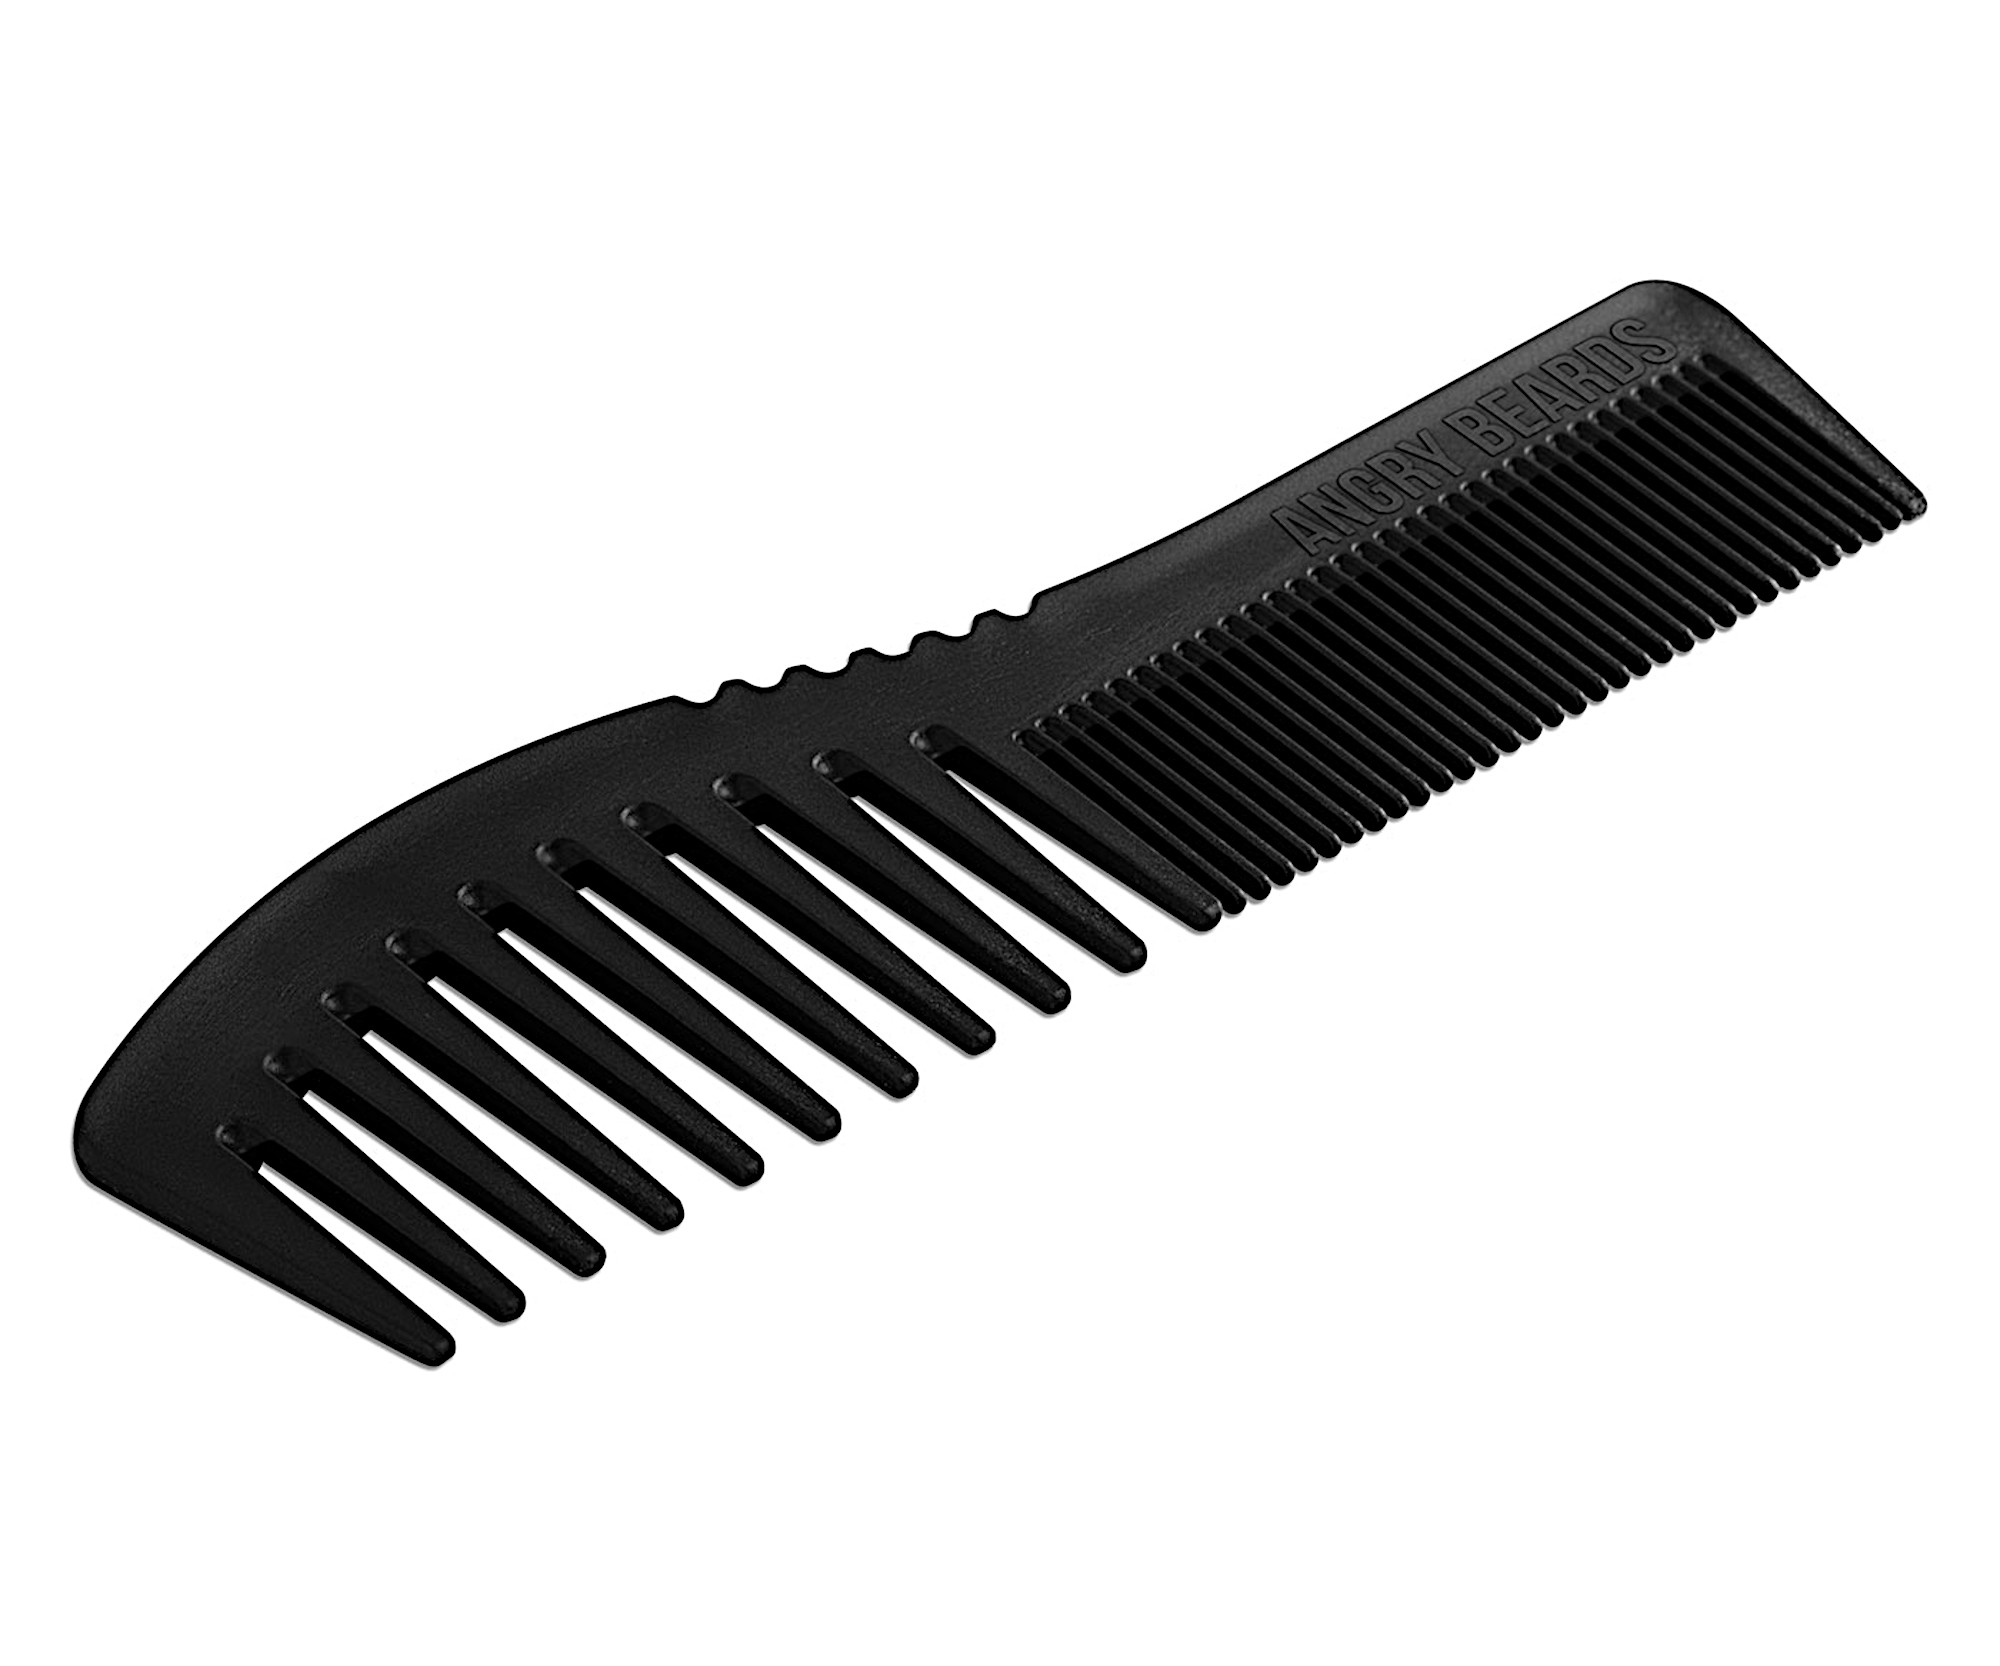 Karbonový hřeben na vlasy a vousy Angry Beards Dual Comb - černý (GR-COMB-CARBON-DUAL) + dárek zdarma